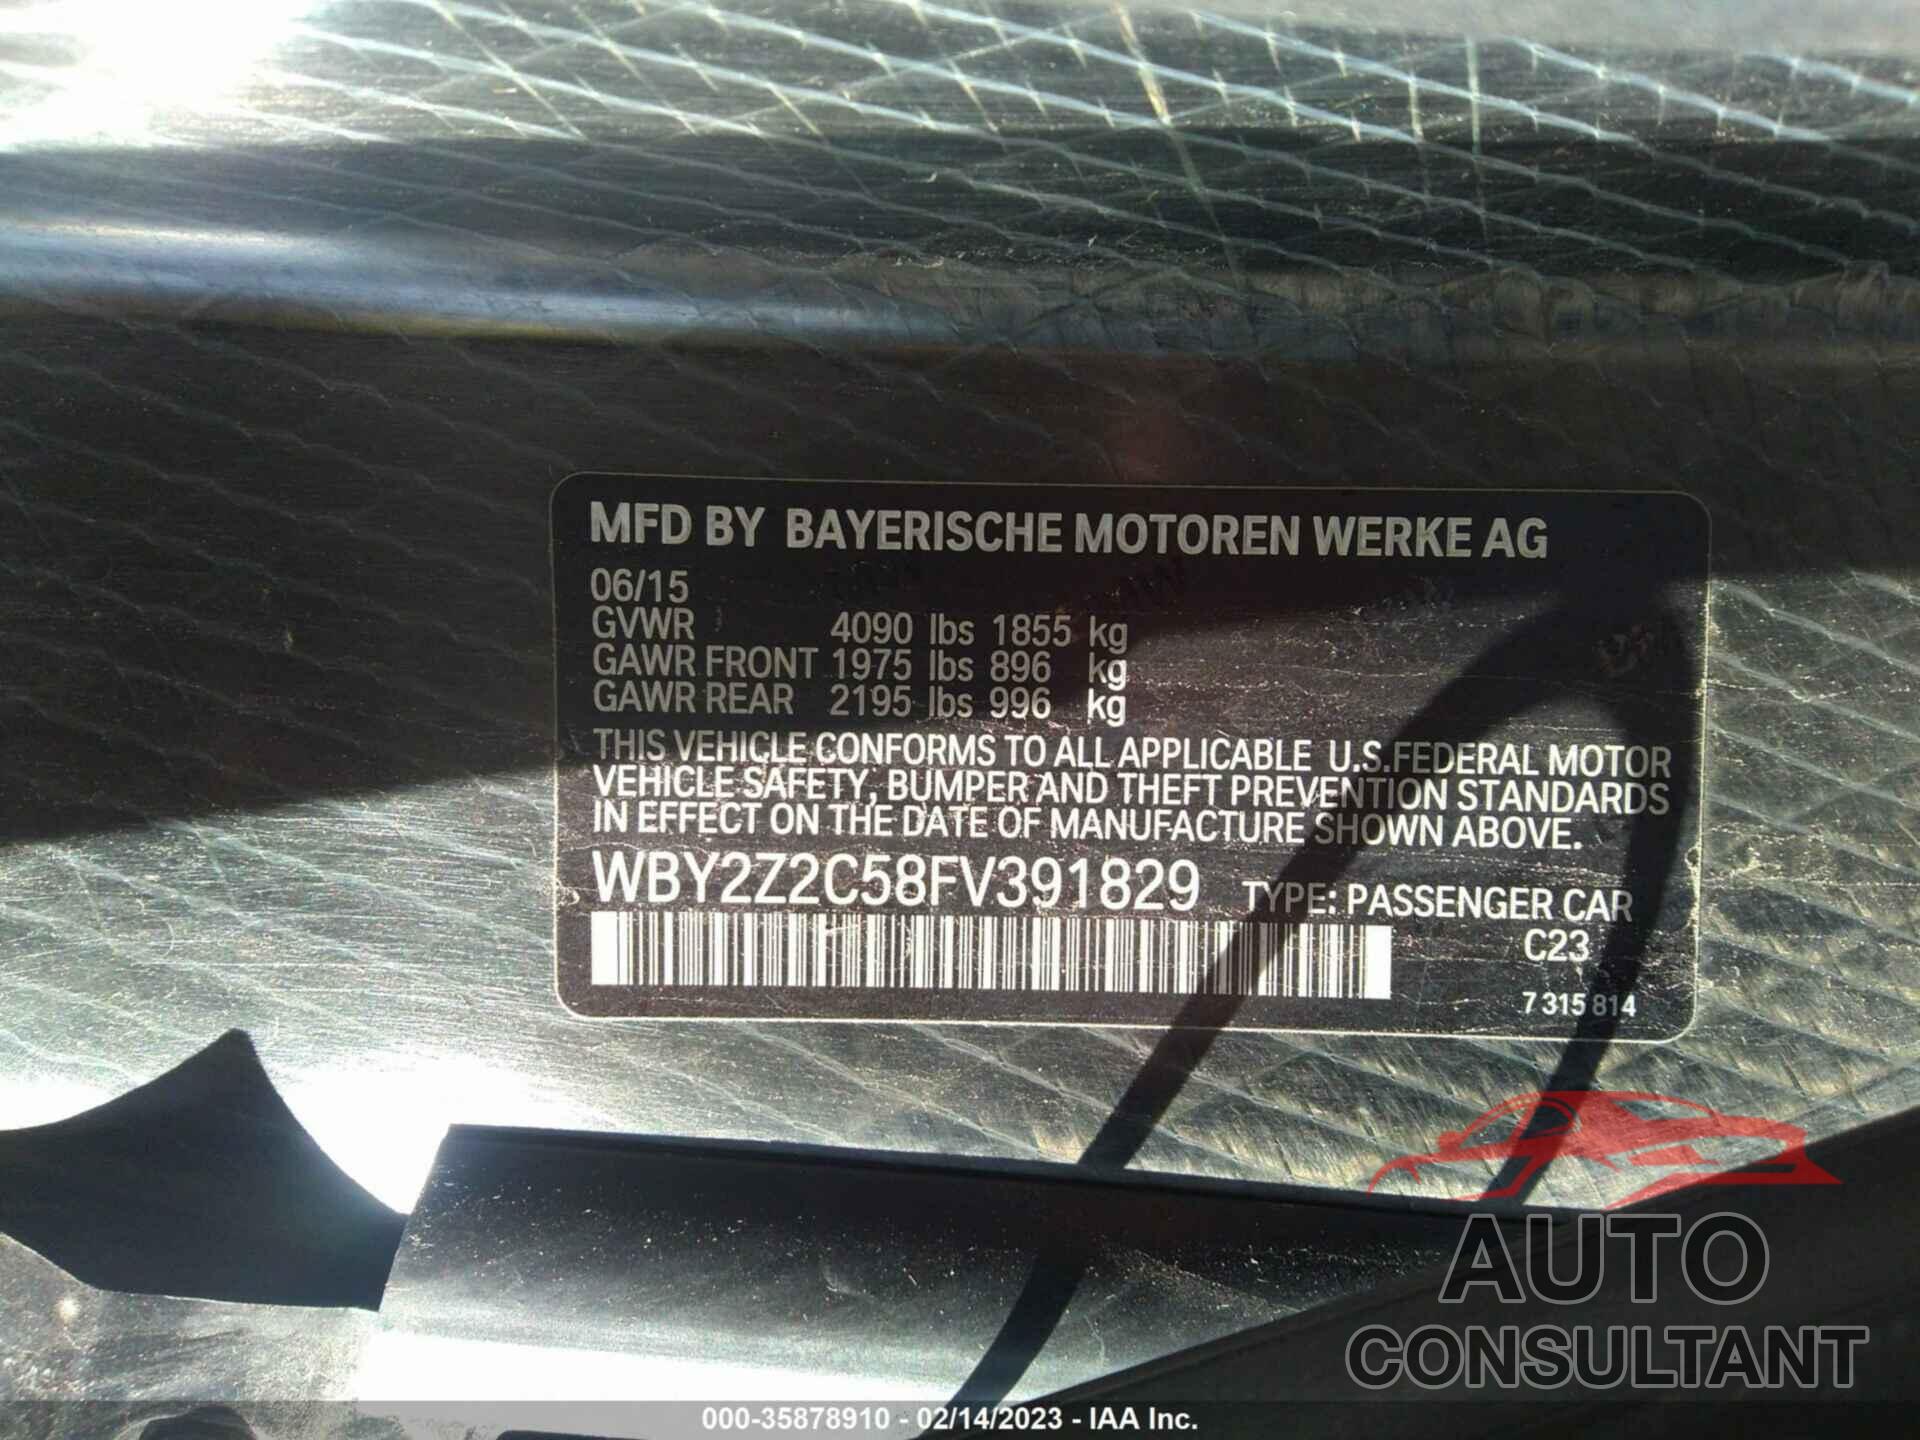 BMW I8 2015 - WBY2Z2C58FV391829